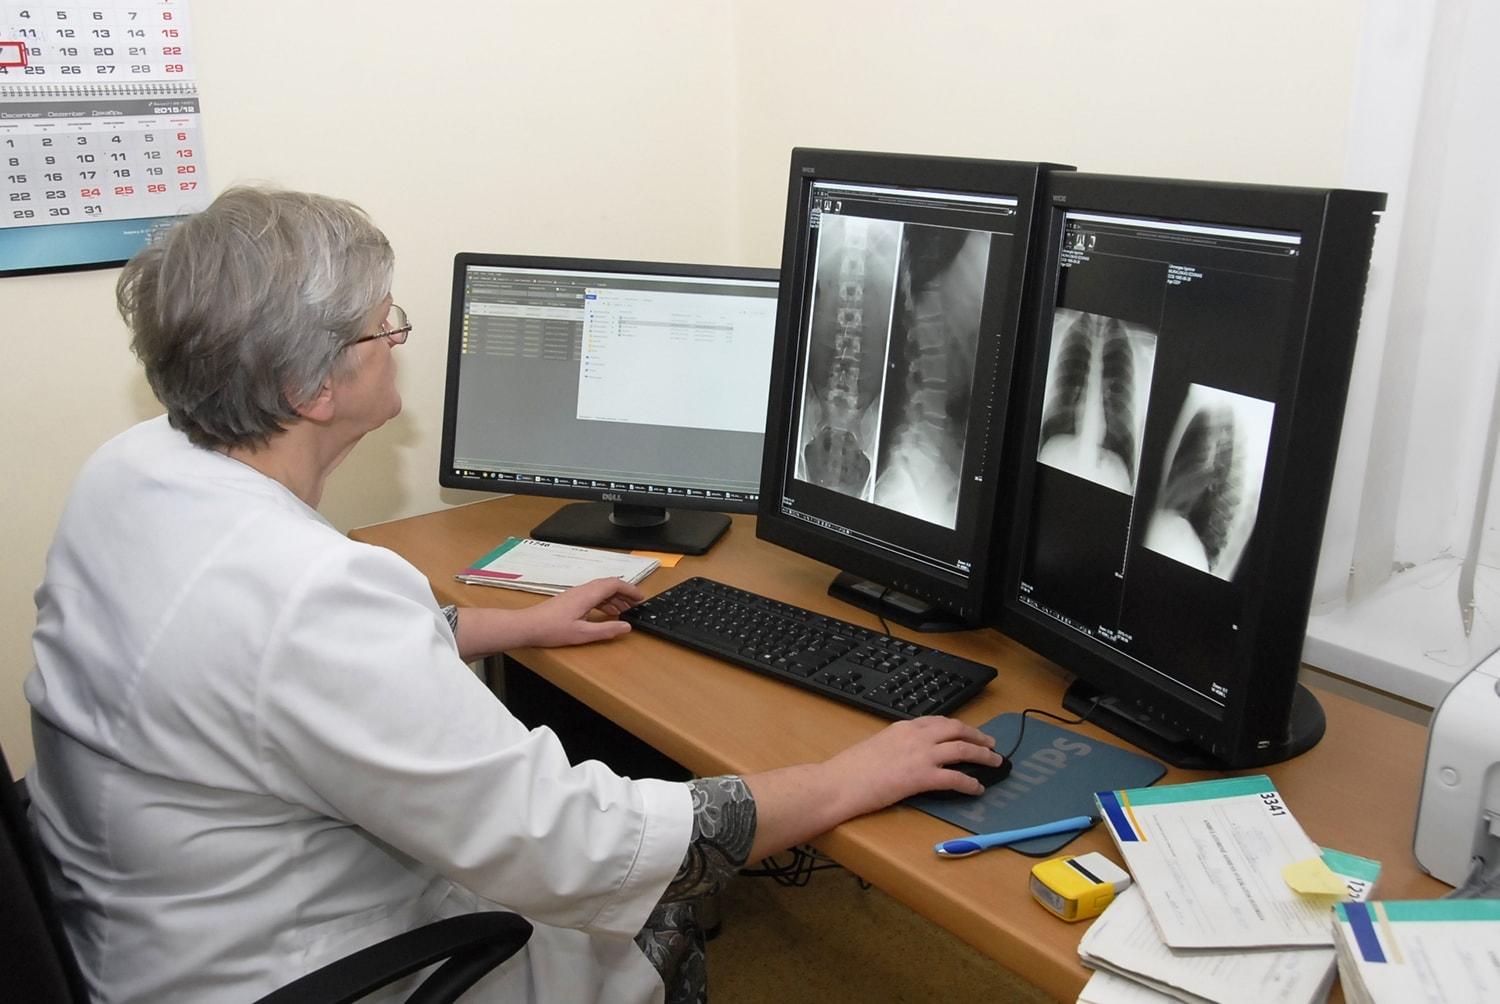 Ligoninės Radiologijos skyriuje – nauja įranga / Gedimino Nemunaičio nuotr. Kompiuterinė gydytojo radiologo darbo vieta.